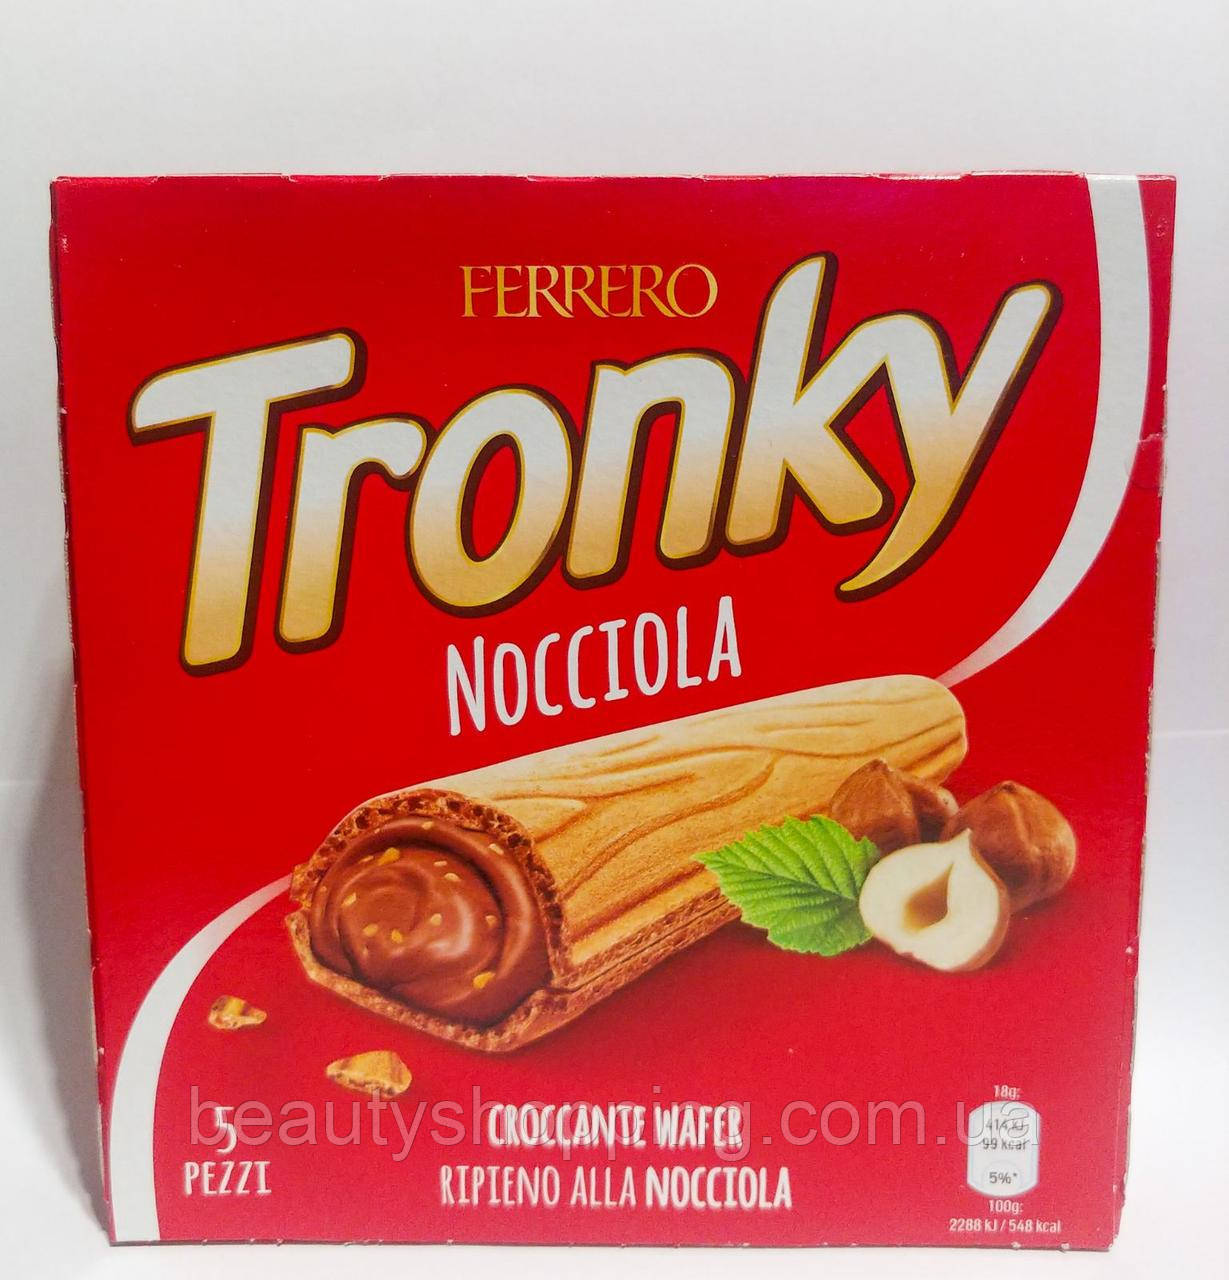 Tronky Nocciola вафельні трубочки з шоколадно-горіховою начинкою 5 штук 90g Ferrero Італія